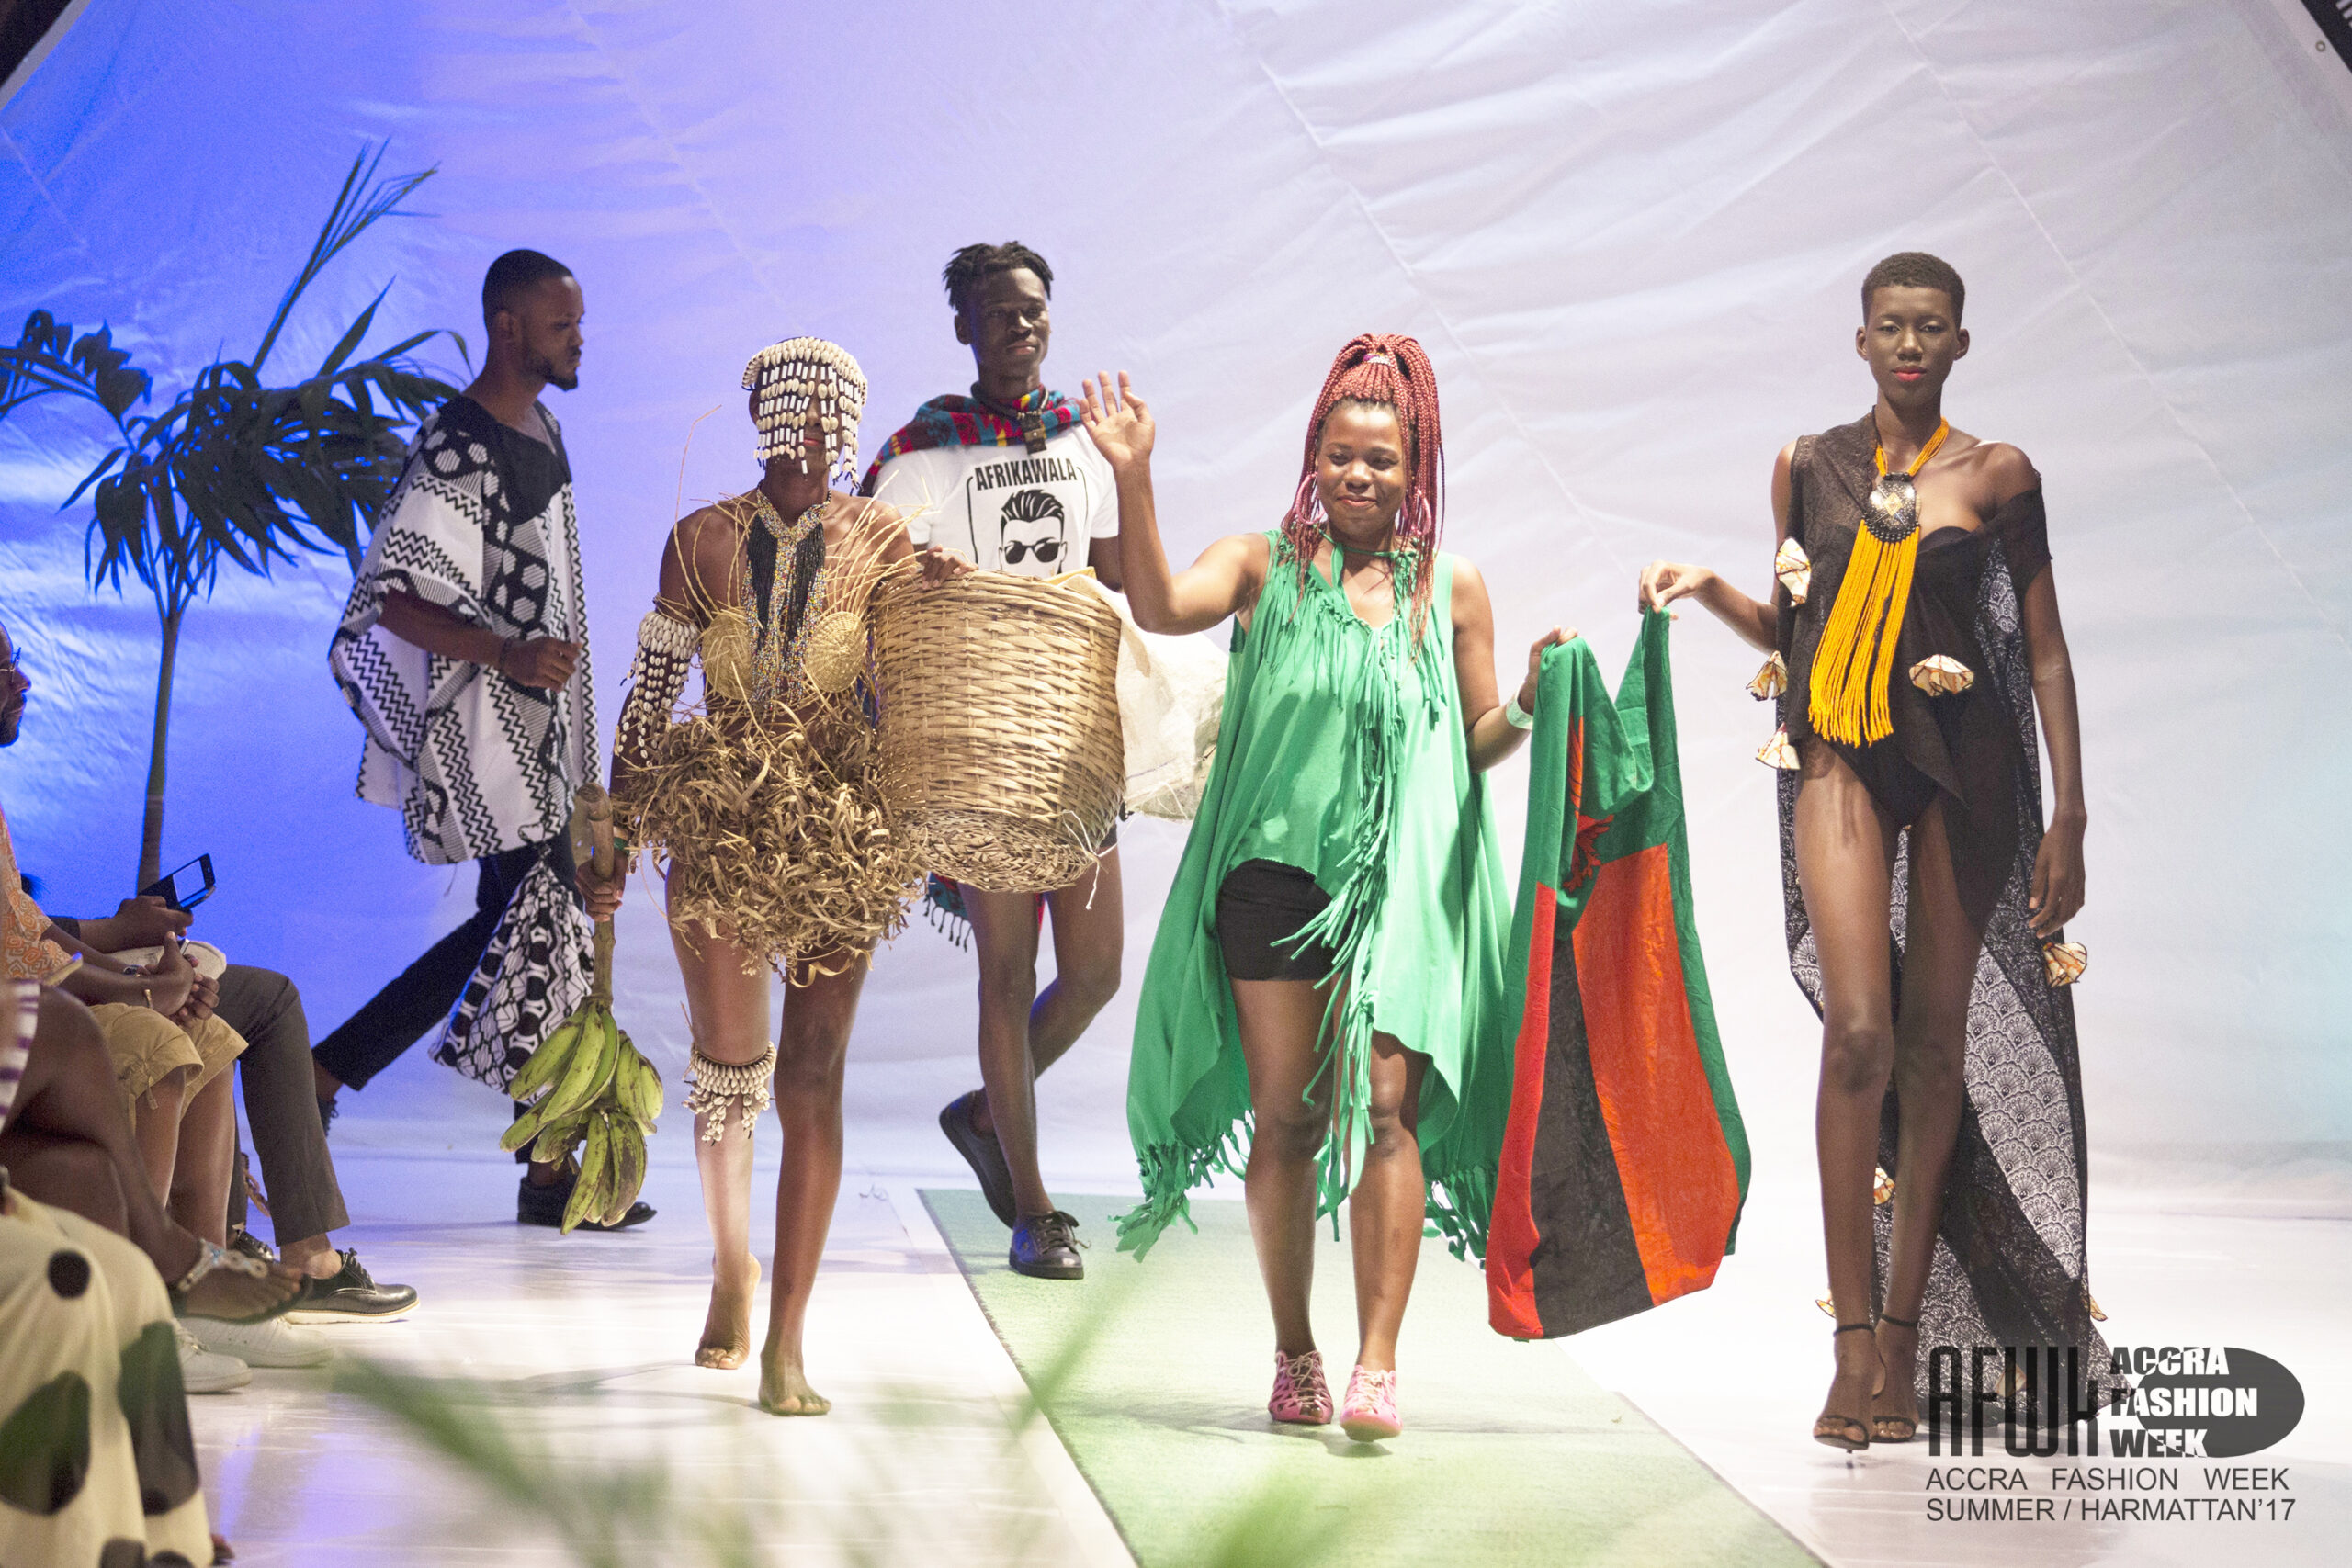 Afrikawala (Zambia) @ Accra Fashion Week S/H17